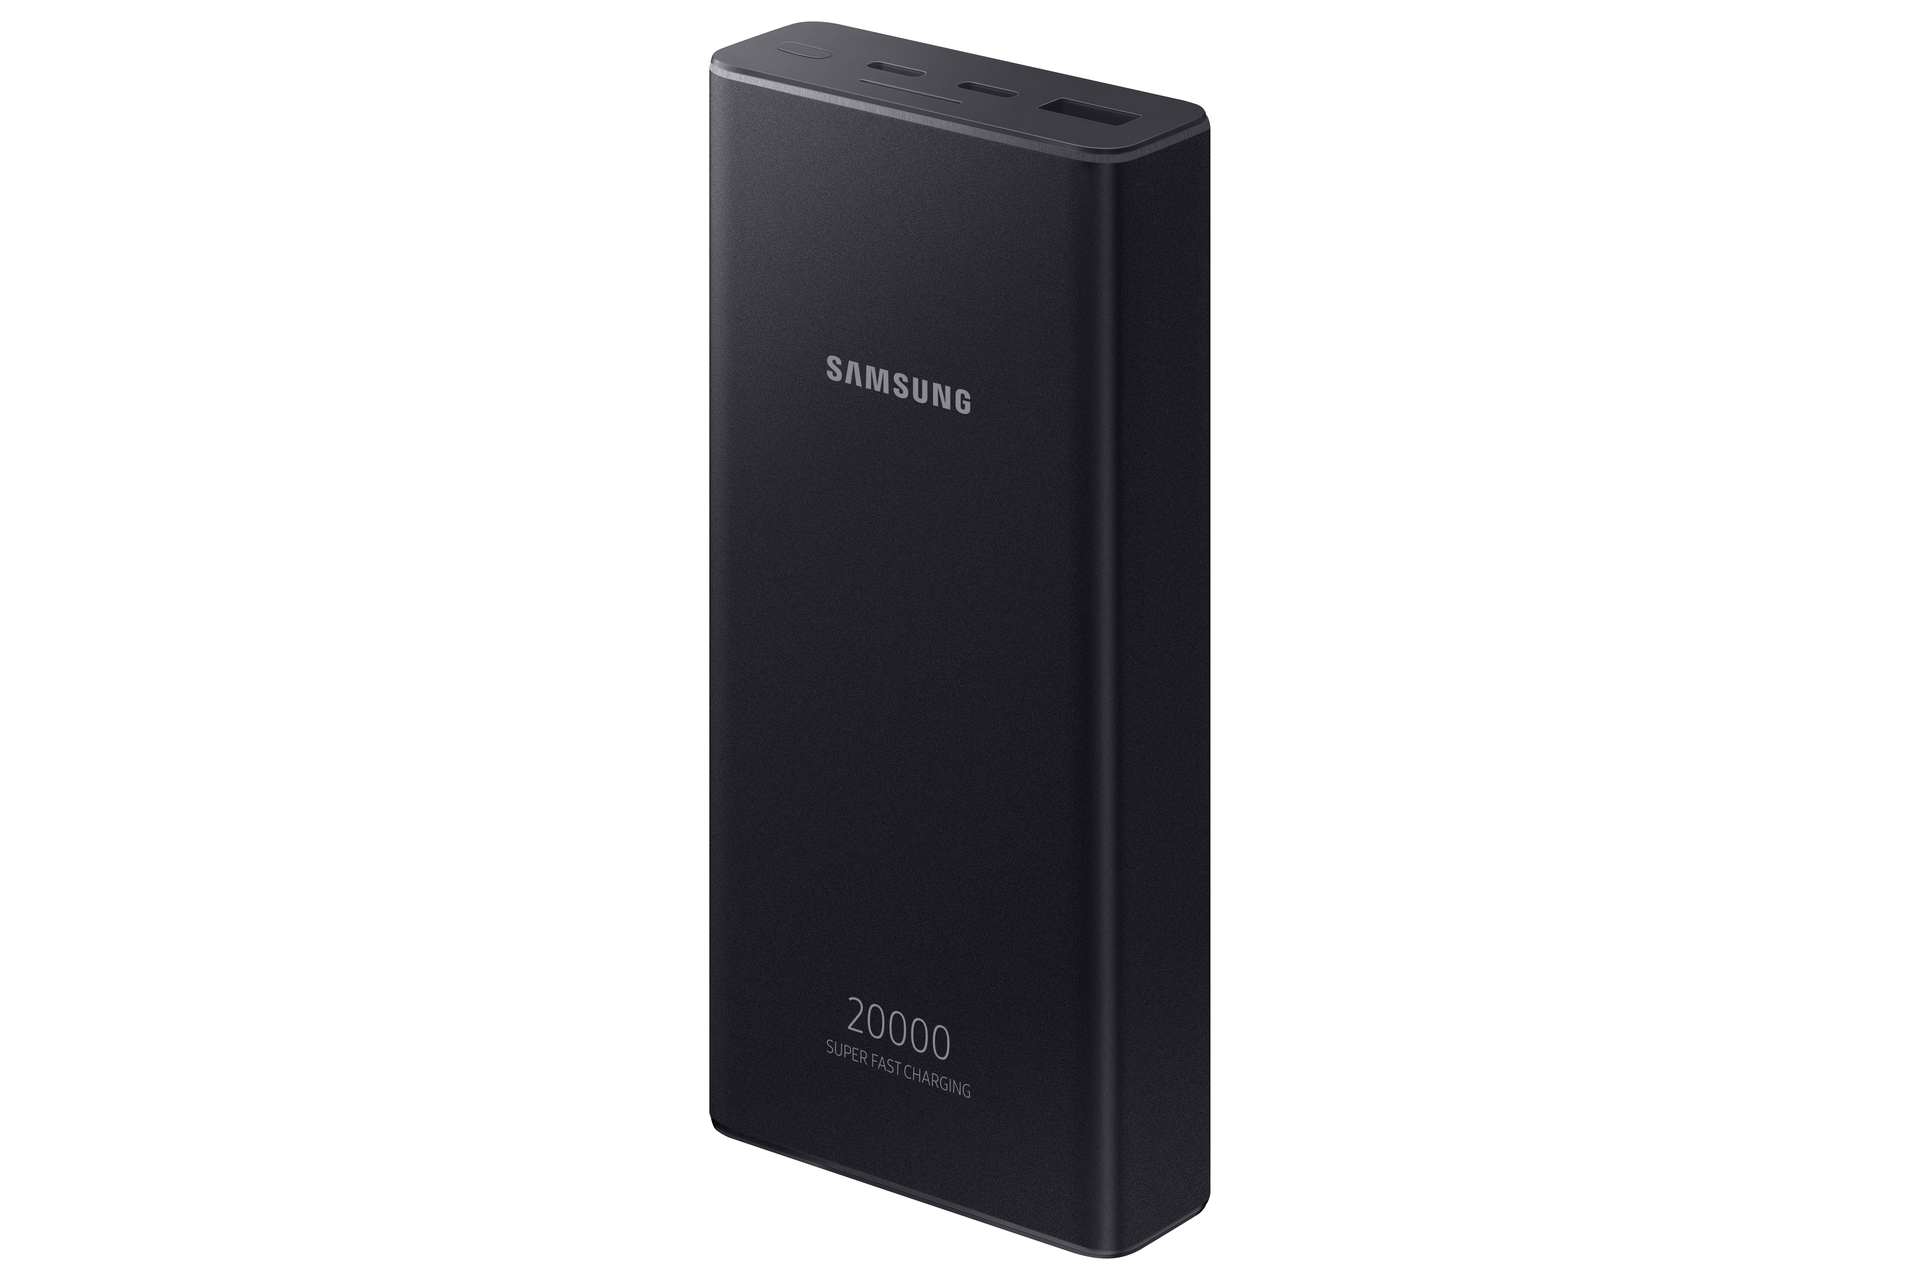 Samsung Powerbank 20000 mAh Dark Grey - Everyshop